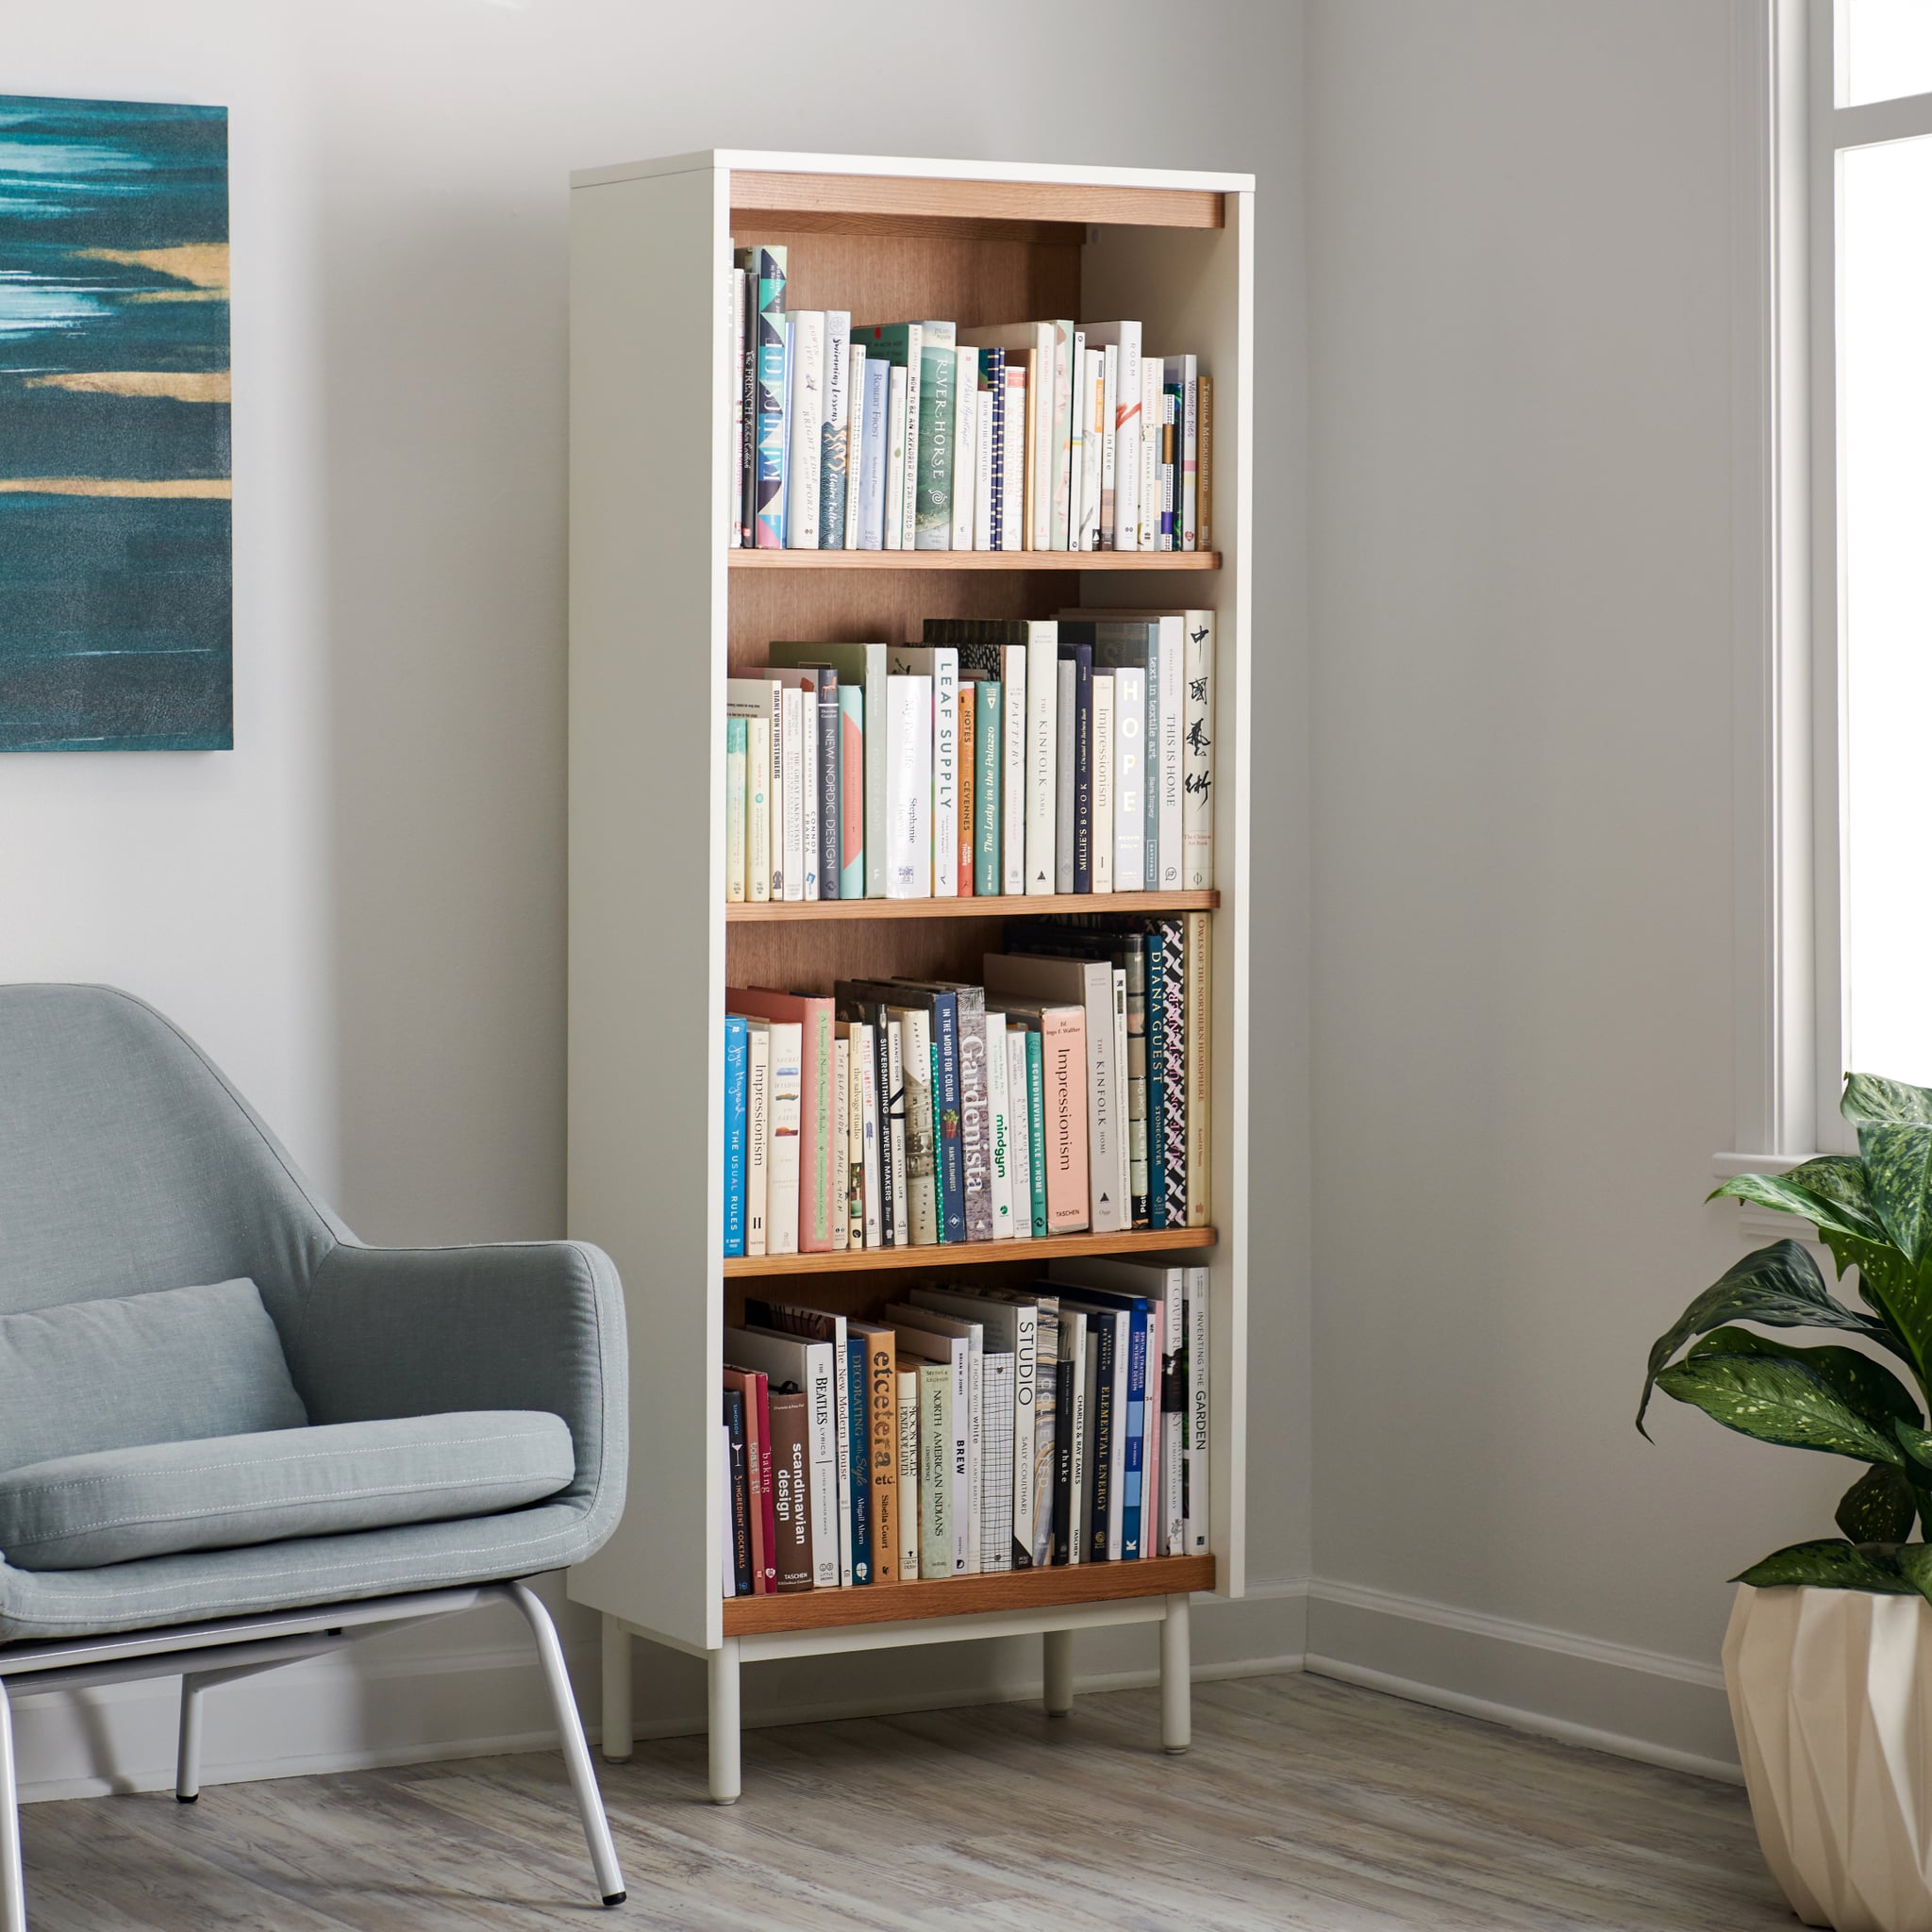 Modrn Scandinavian Finna Tall Bookcase Walmart S Living Room